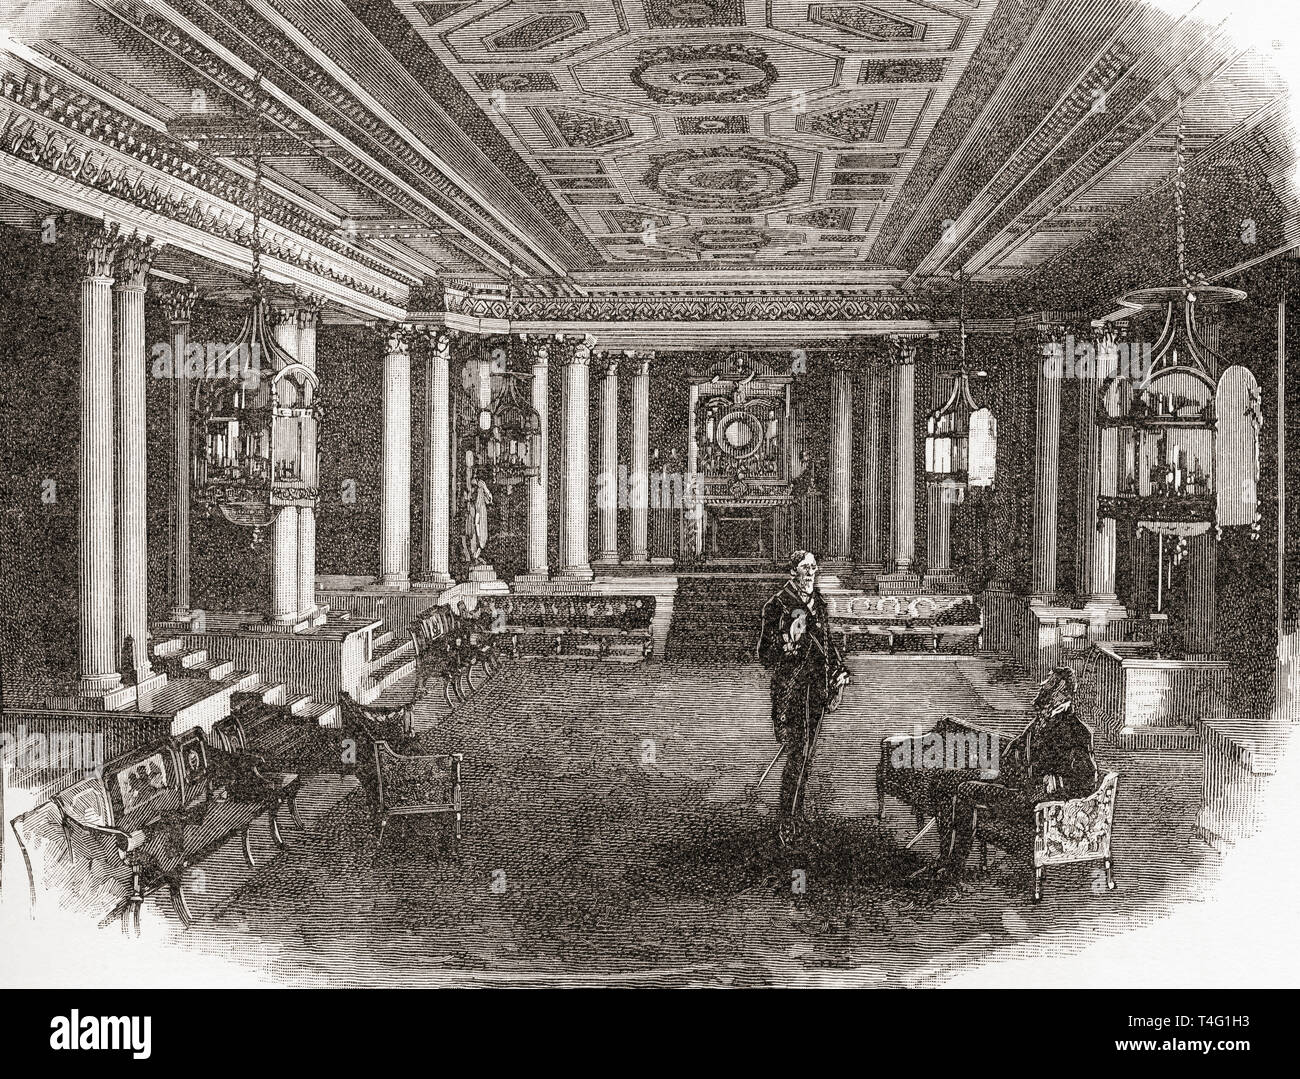 Il Pilastro Camera, Buckingham Palace, London, England, visto qui nel XIX secolo. Residenza londinese e sede amministrativa del monarca del Regno Unito. Da Londra Foto, pubblicato 1890 Foto Stock